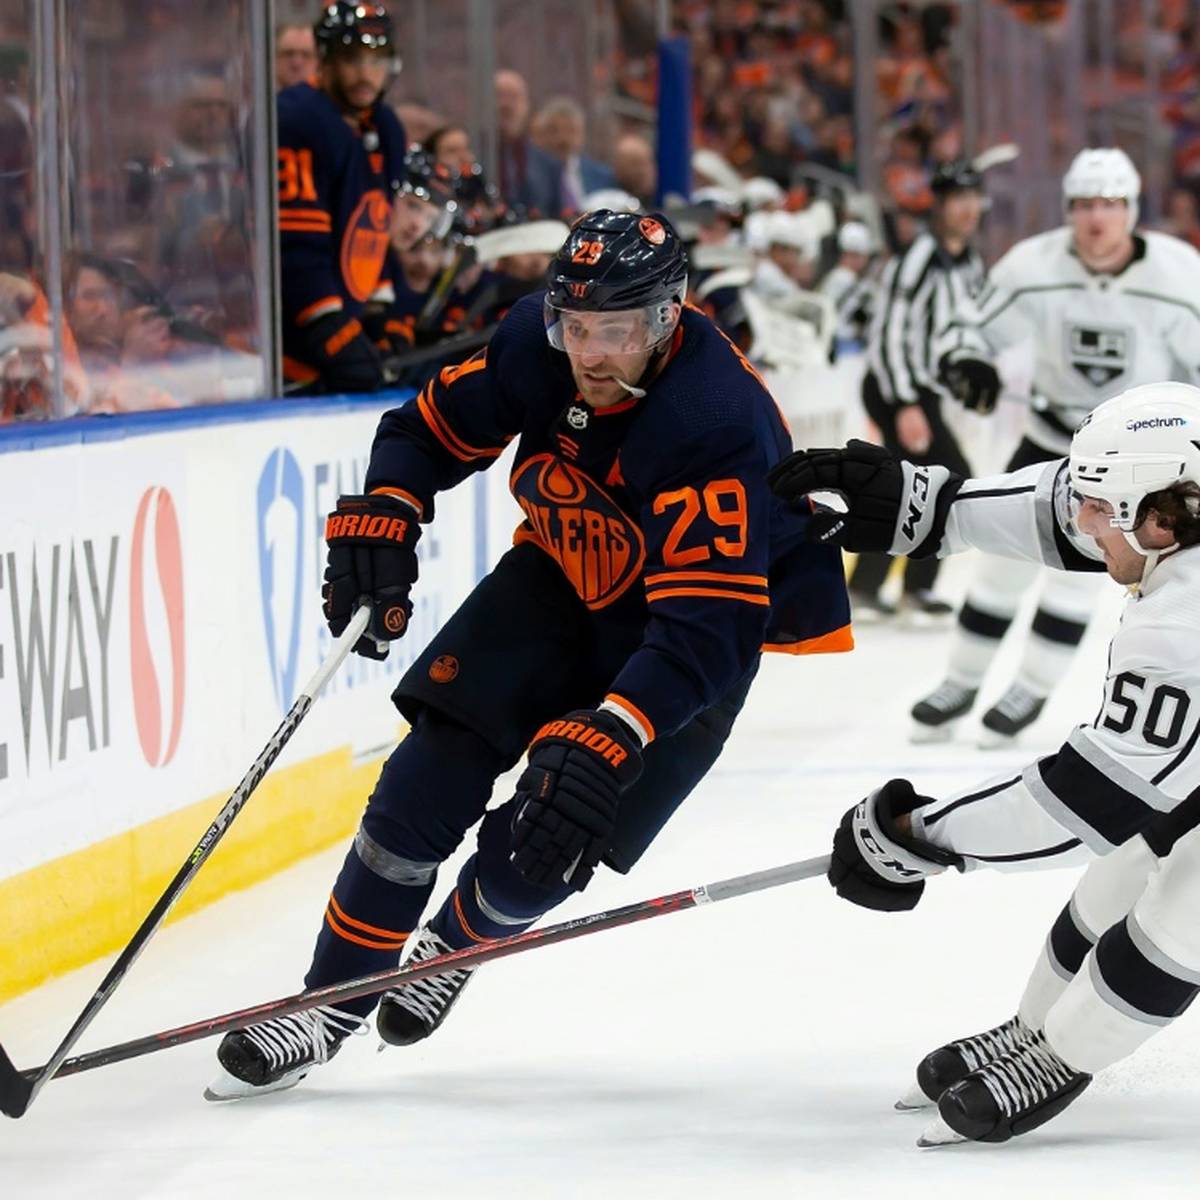 Eishockey-Star Leon Draisaitl hofft in der kommenden NHL-Saison auf seinen ersten Stanley-Cup-Gewinn.